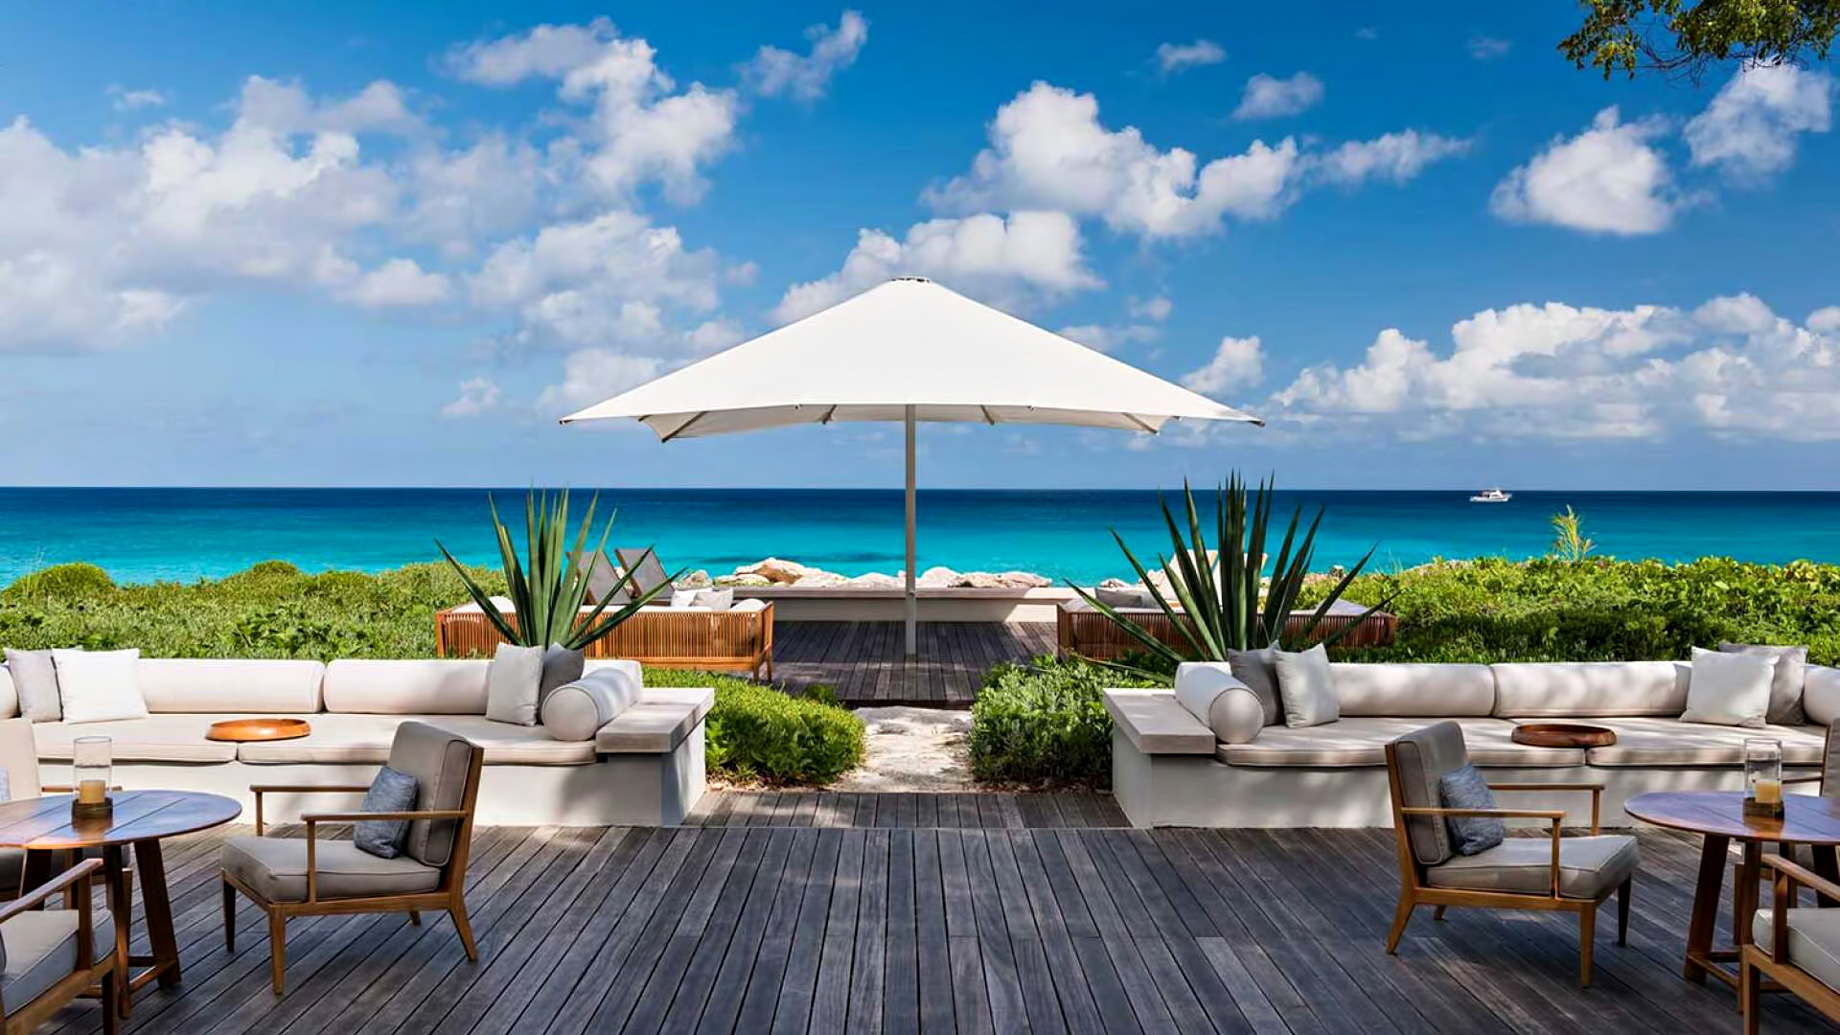 Amanyara Resort – Providenciales, Turks and Caicos Islands – Artist Ocean Villa Deck Ocean View